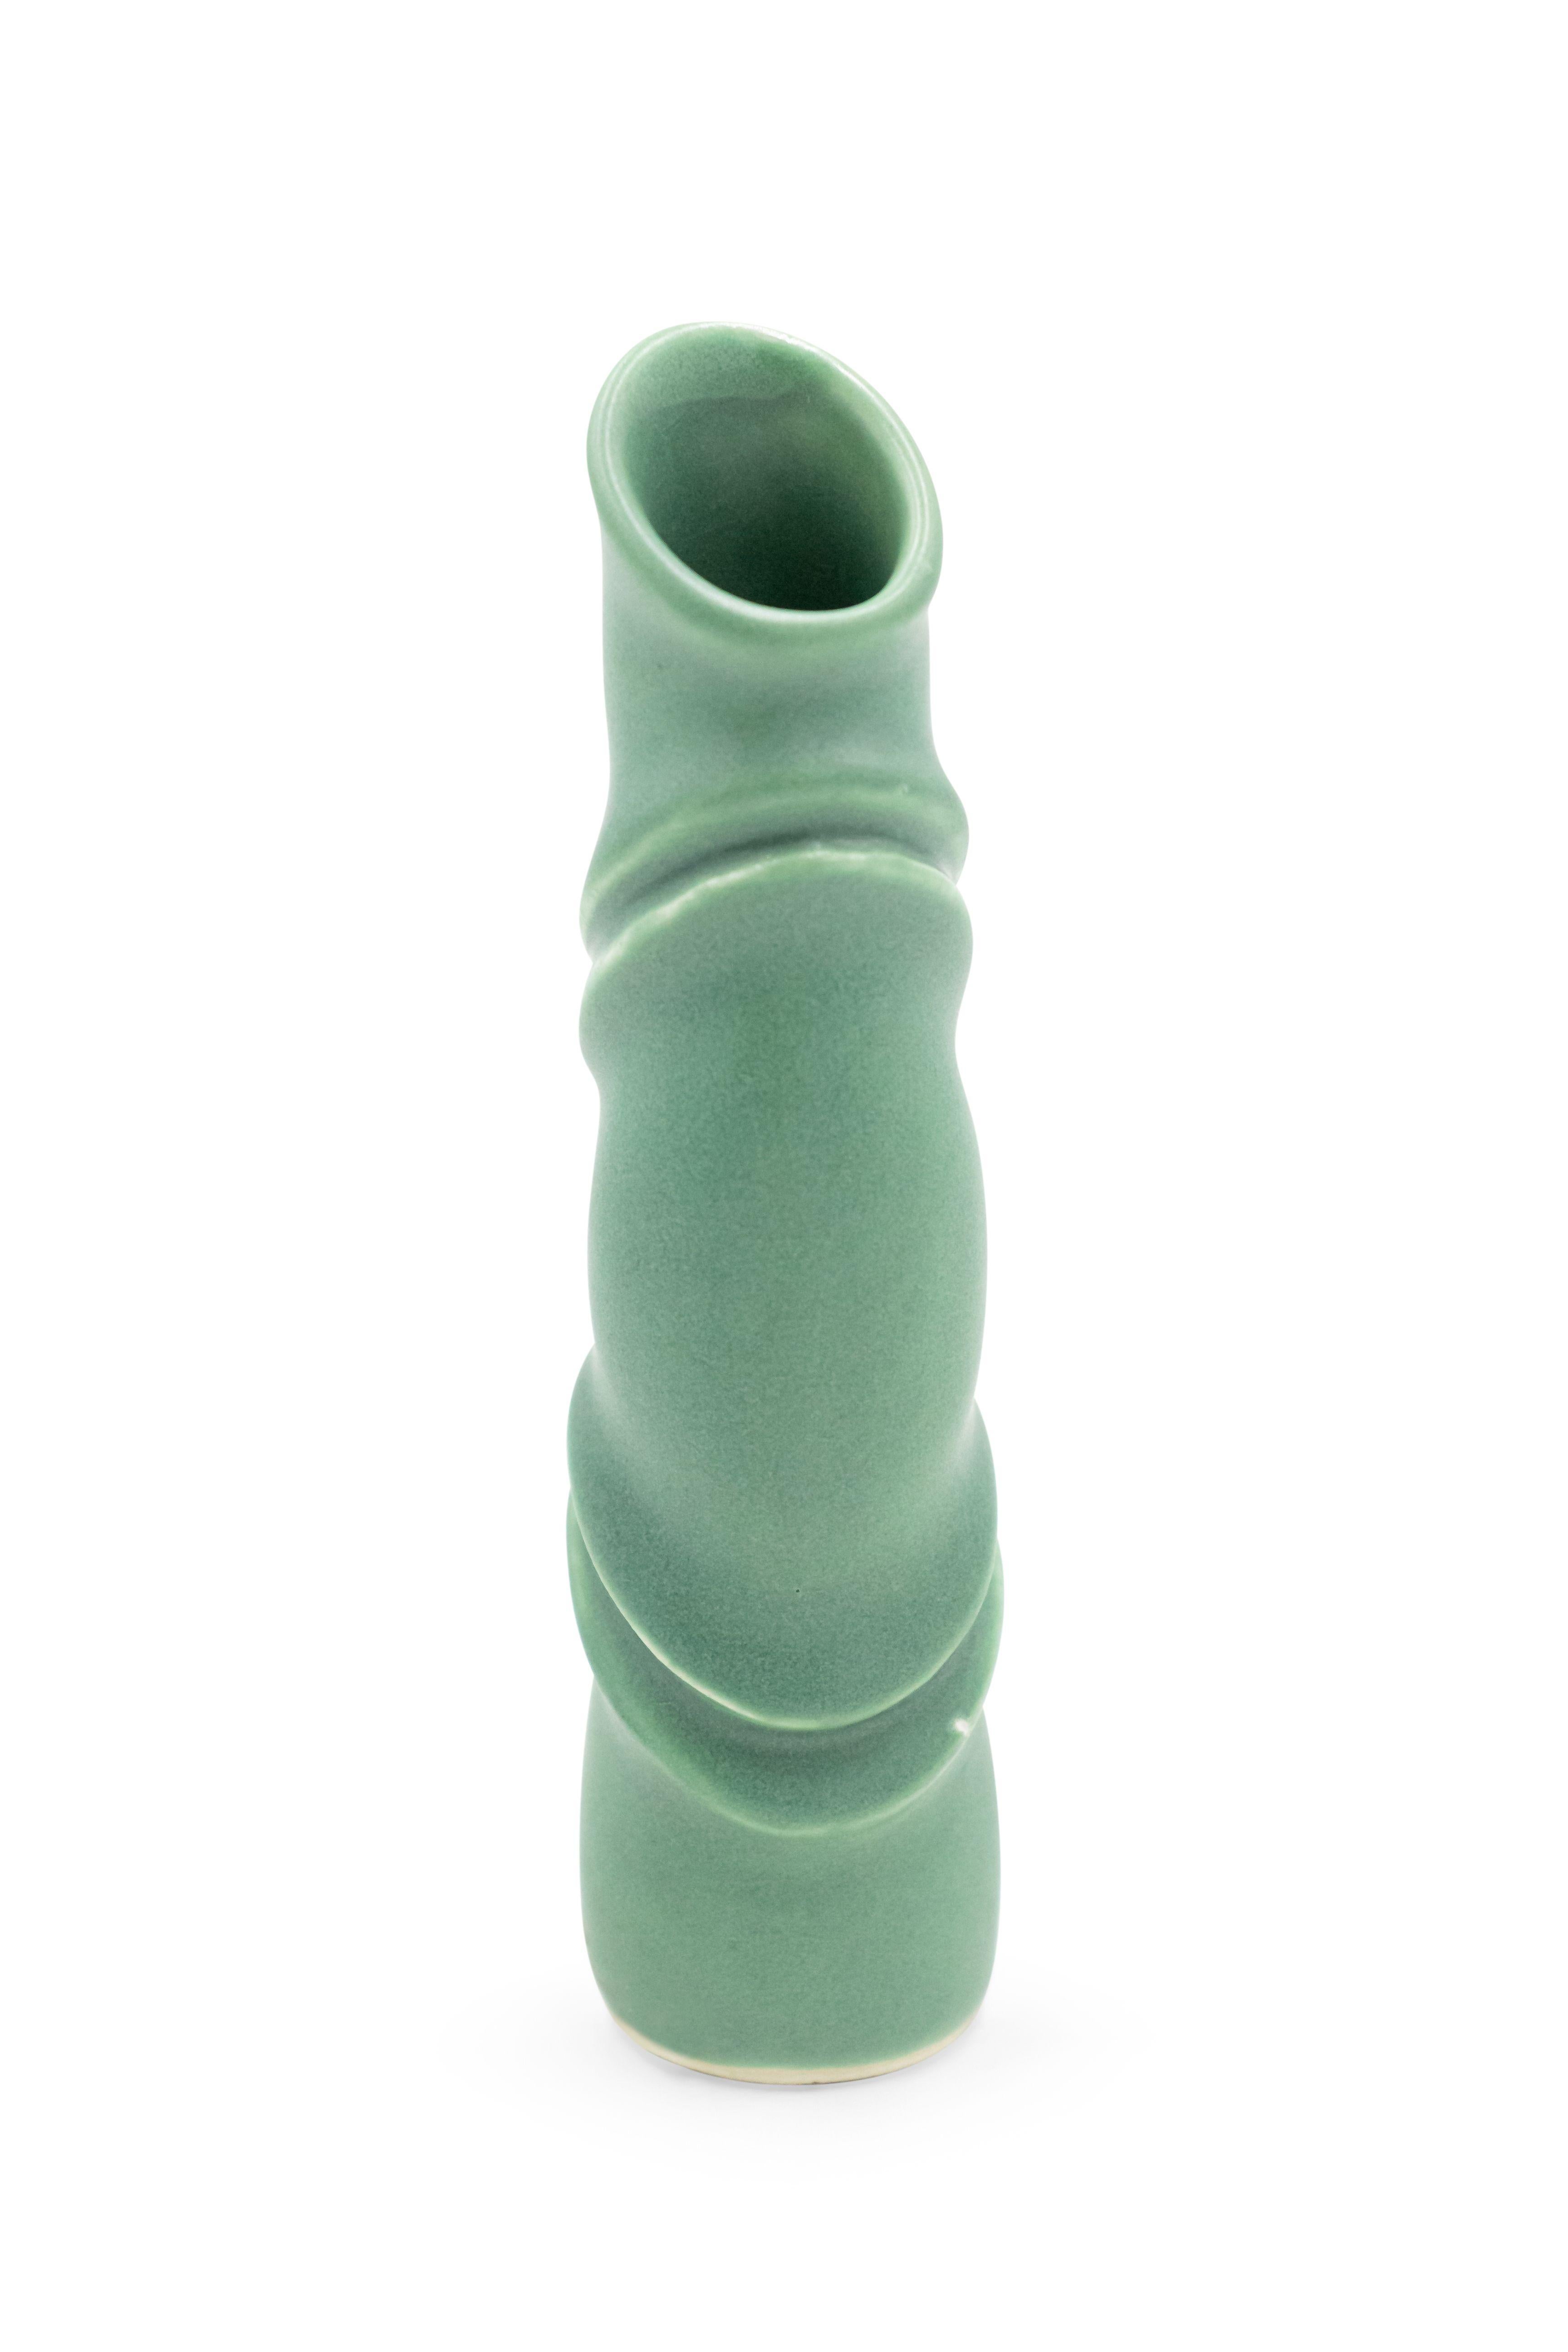 Robert Lee Morris, Celadon cylindrical ceramic vase, Signed.
      